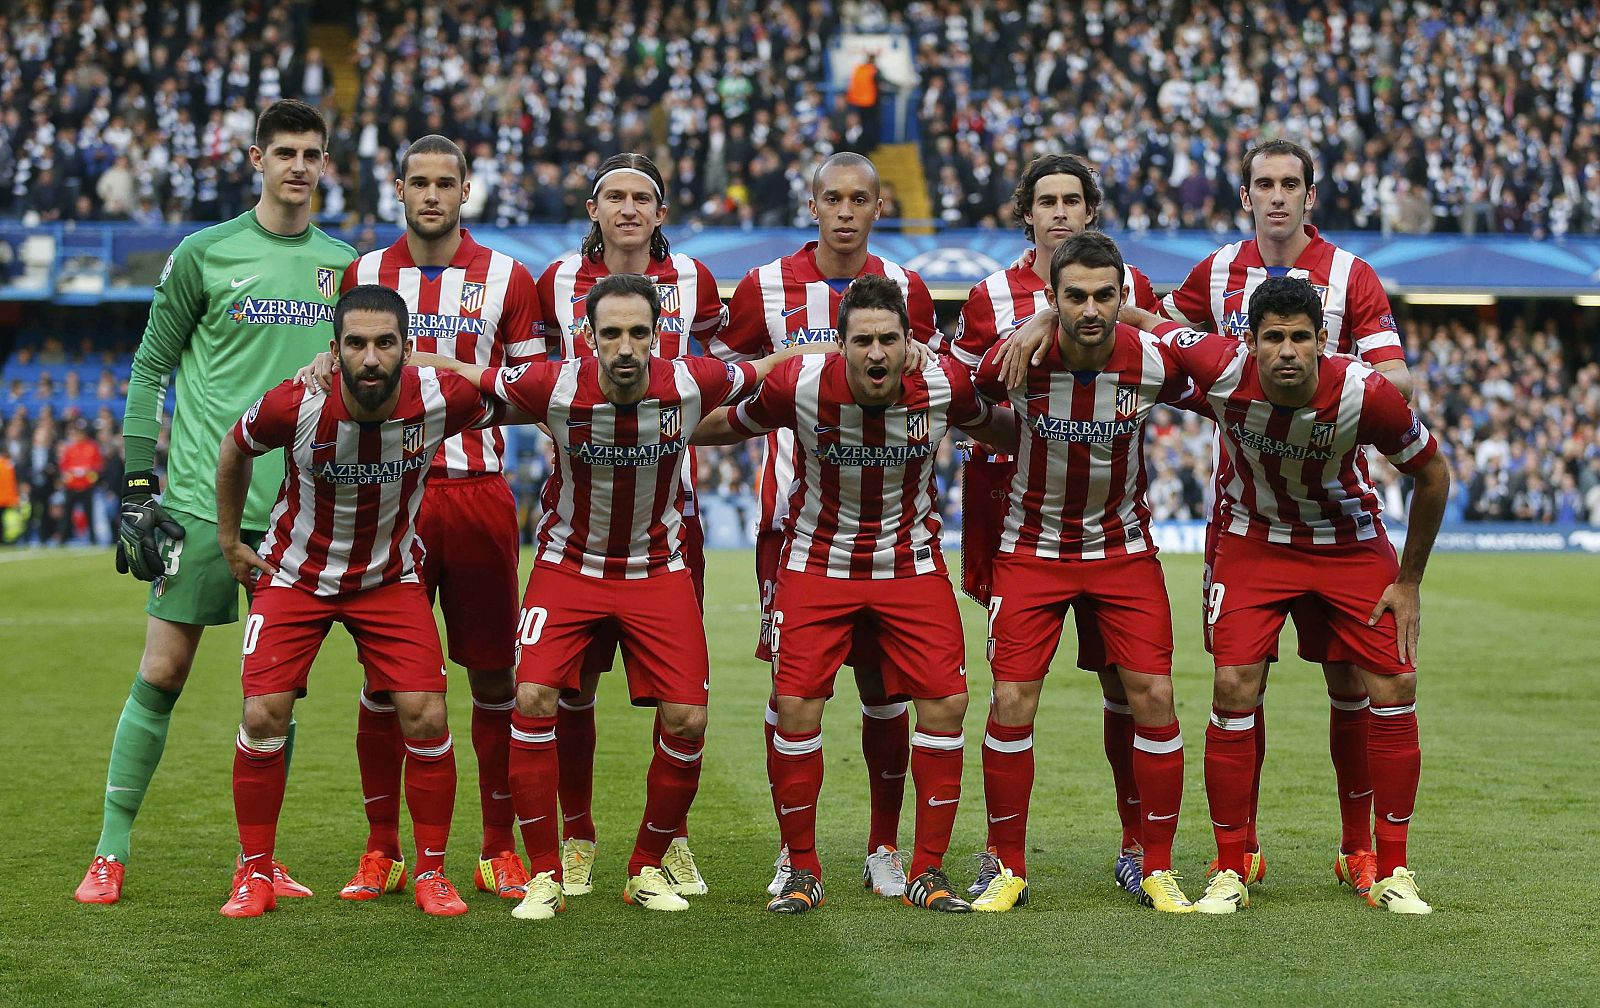 Los jugadores del Atlético de Madrid posan antes del partido.